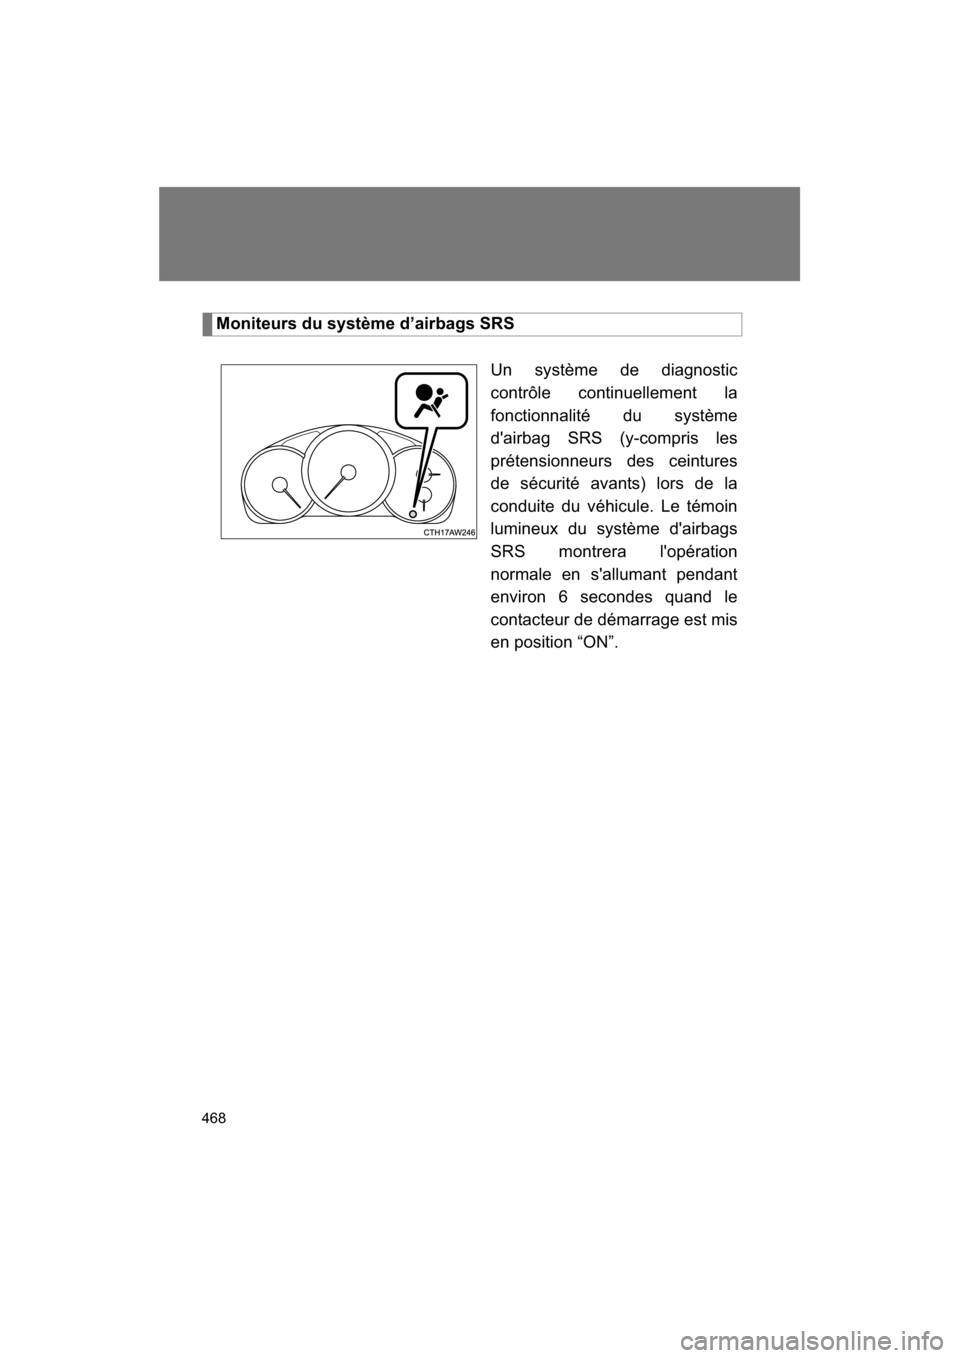 SUBARU BRZ 2014 1.G Owners Manual 468
Moniteurs du système d’airbags SRSUn système de diagnostic 
contrôle continuellement la
fonctionnalité du système 
dairbag SRS (y-compris les 
prétensionneurs des ceintures
de sécurité 